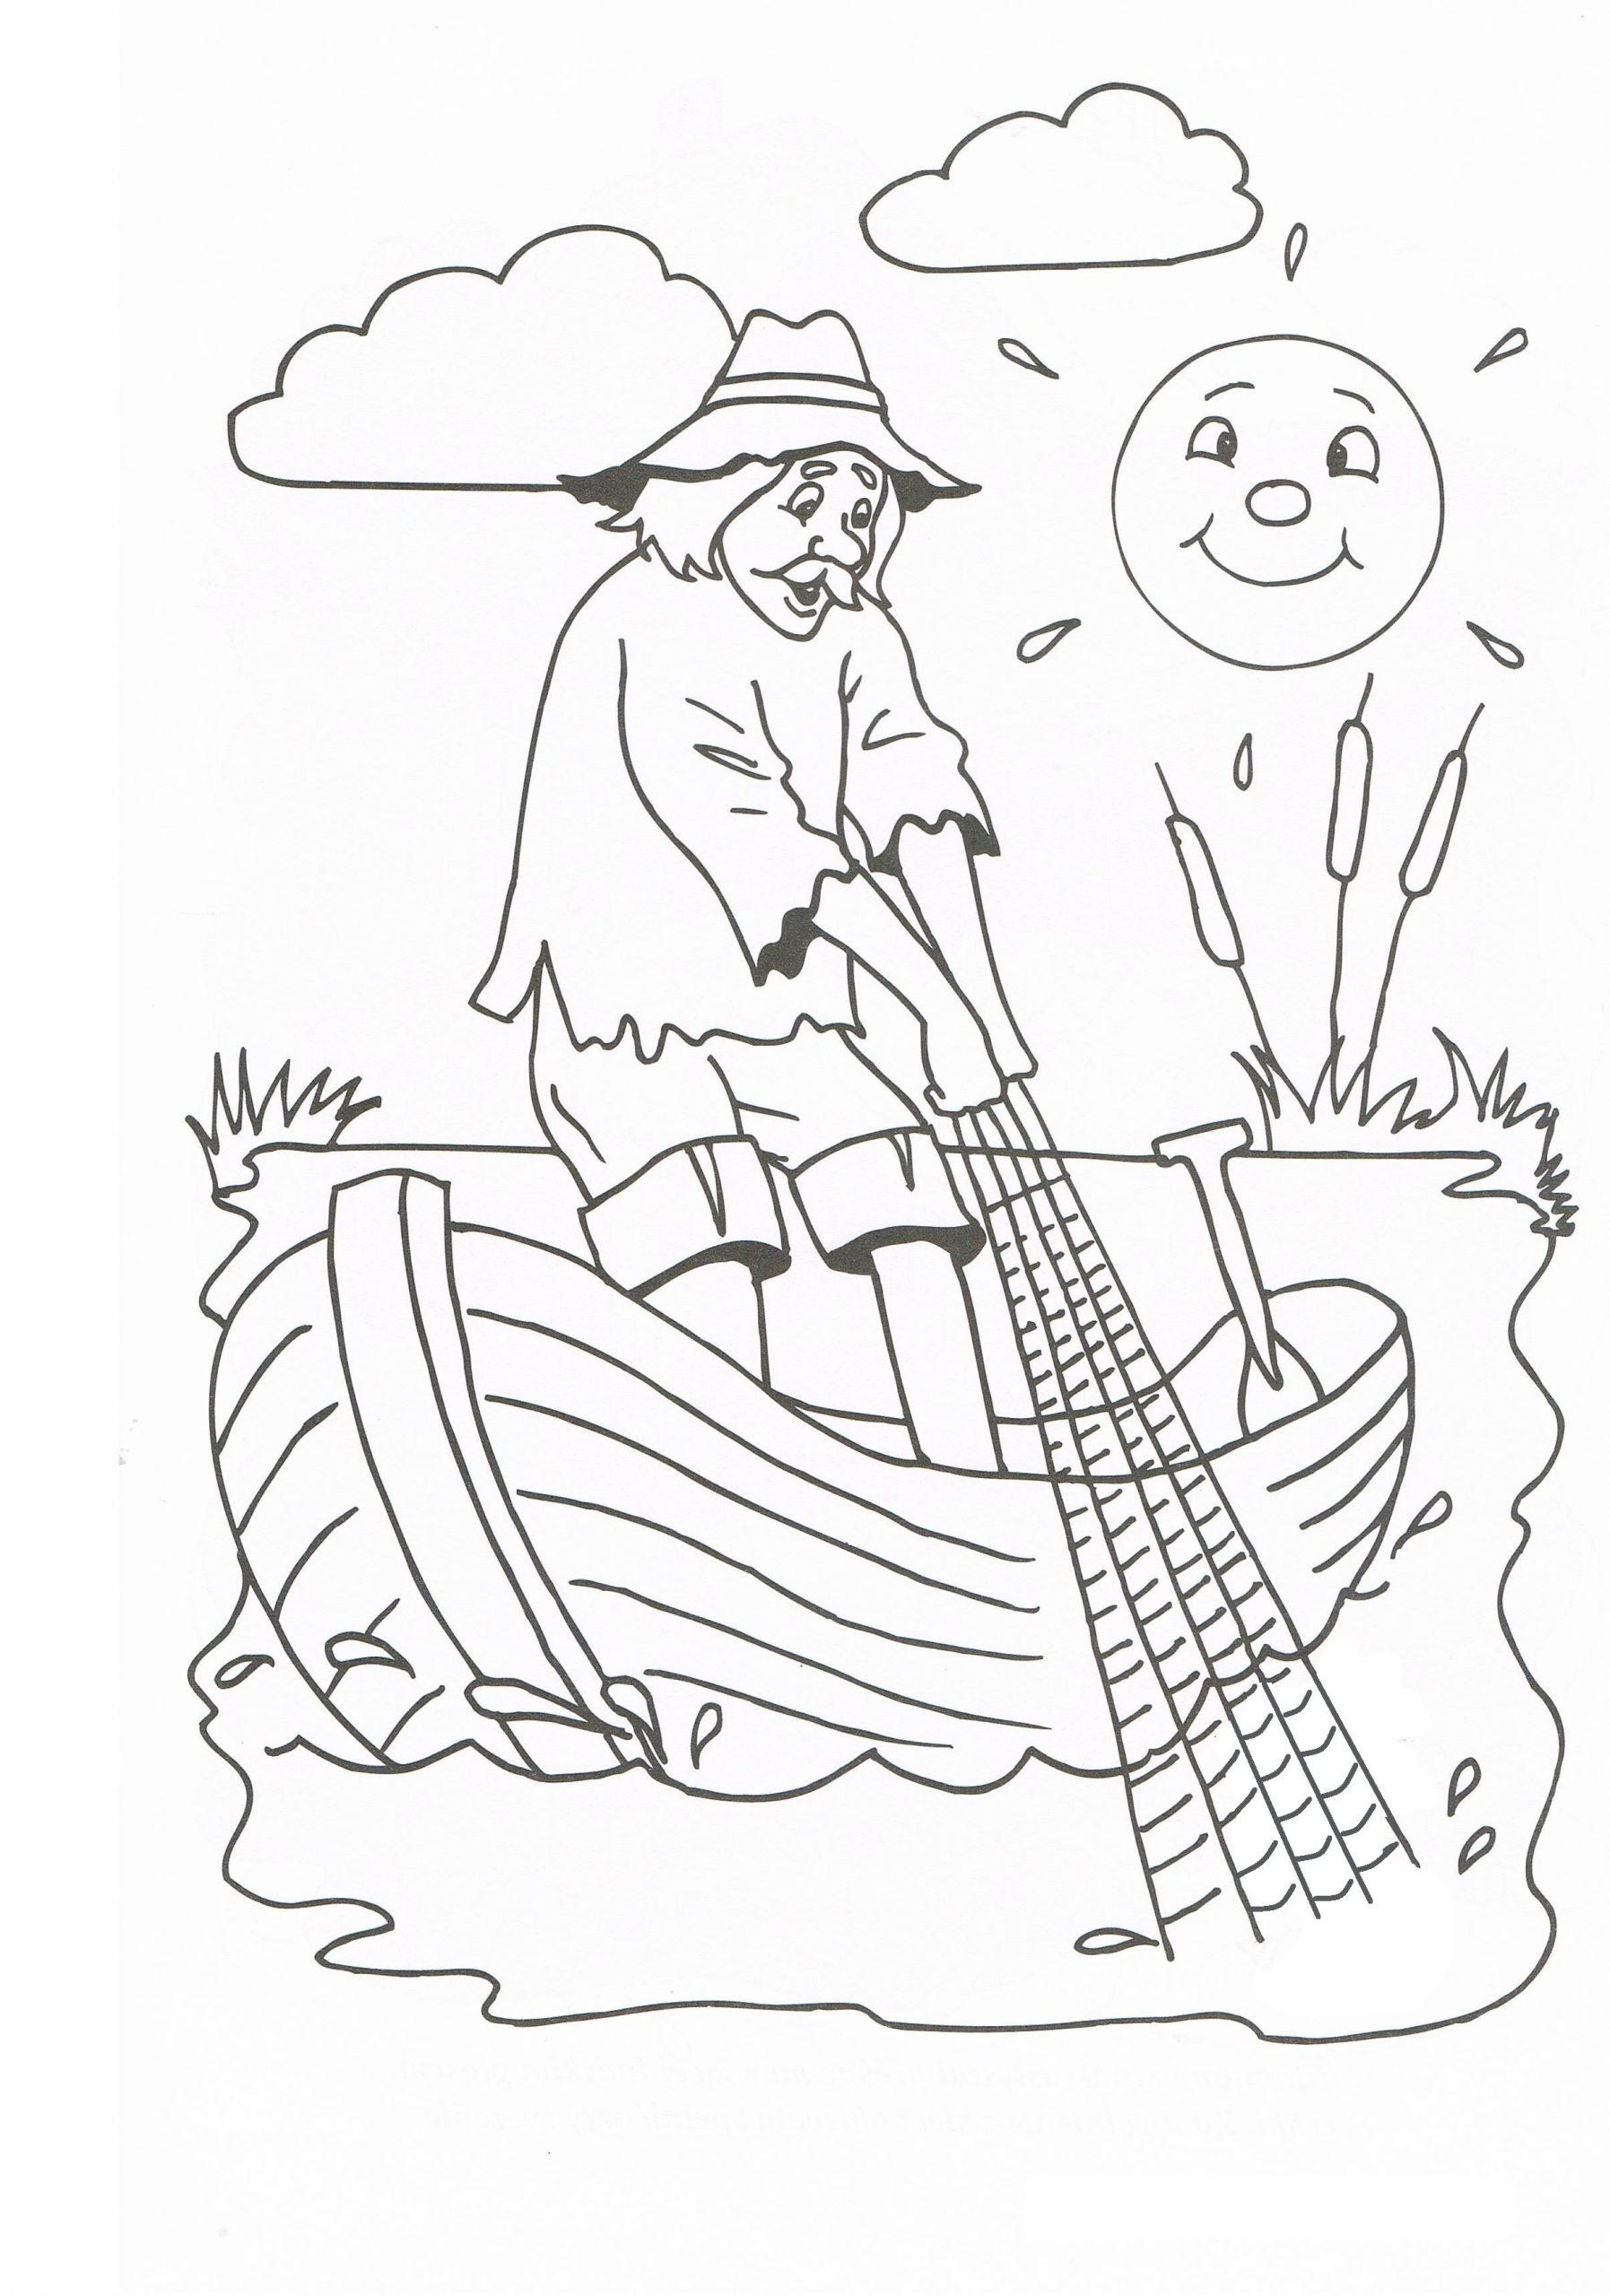 Иллюстрации к сказке о рыбаке и рыбке Пушкина легкие